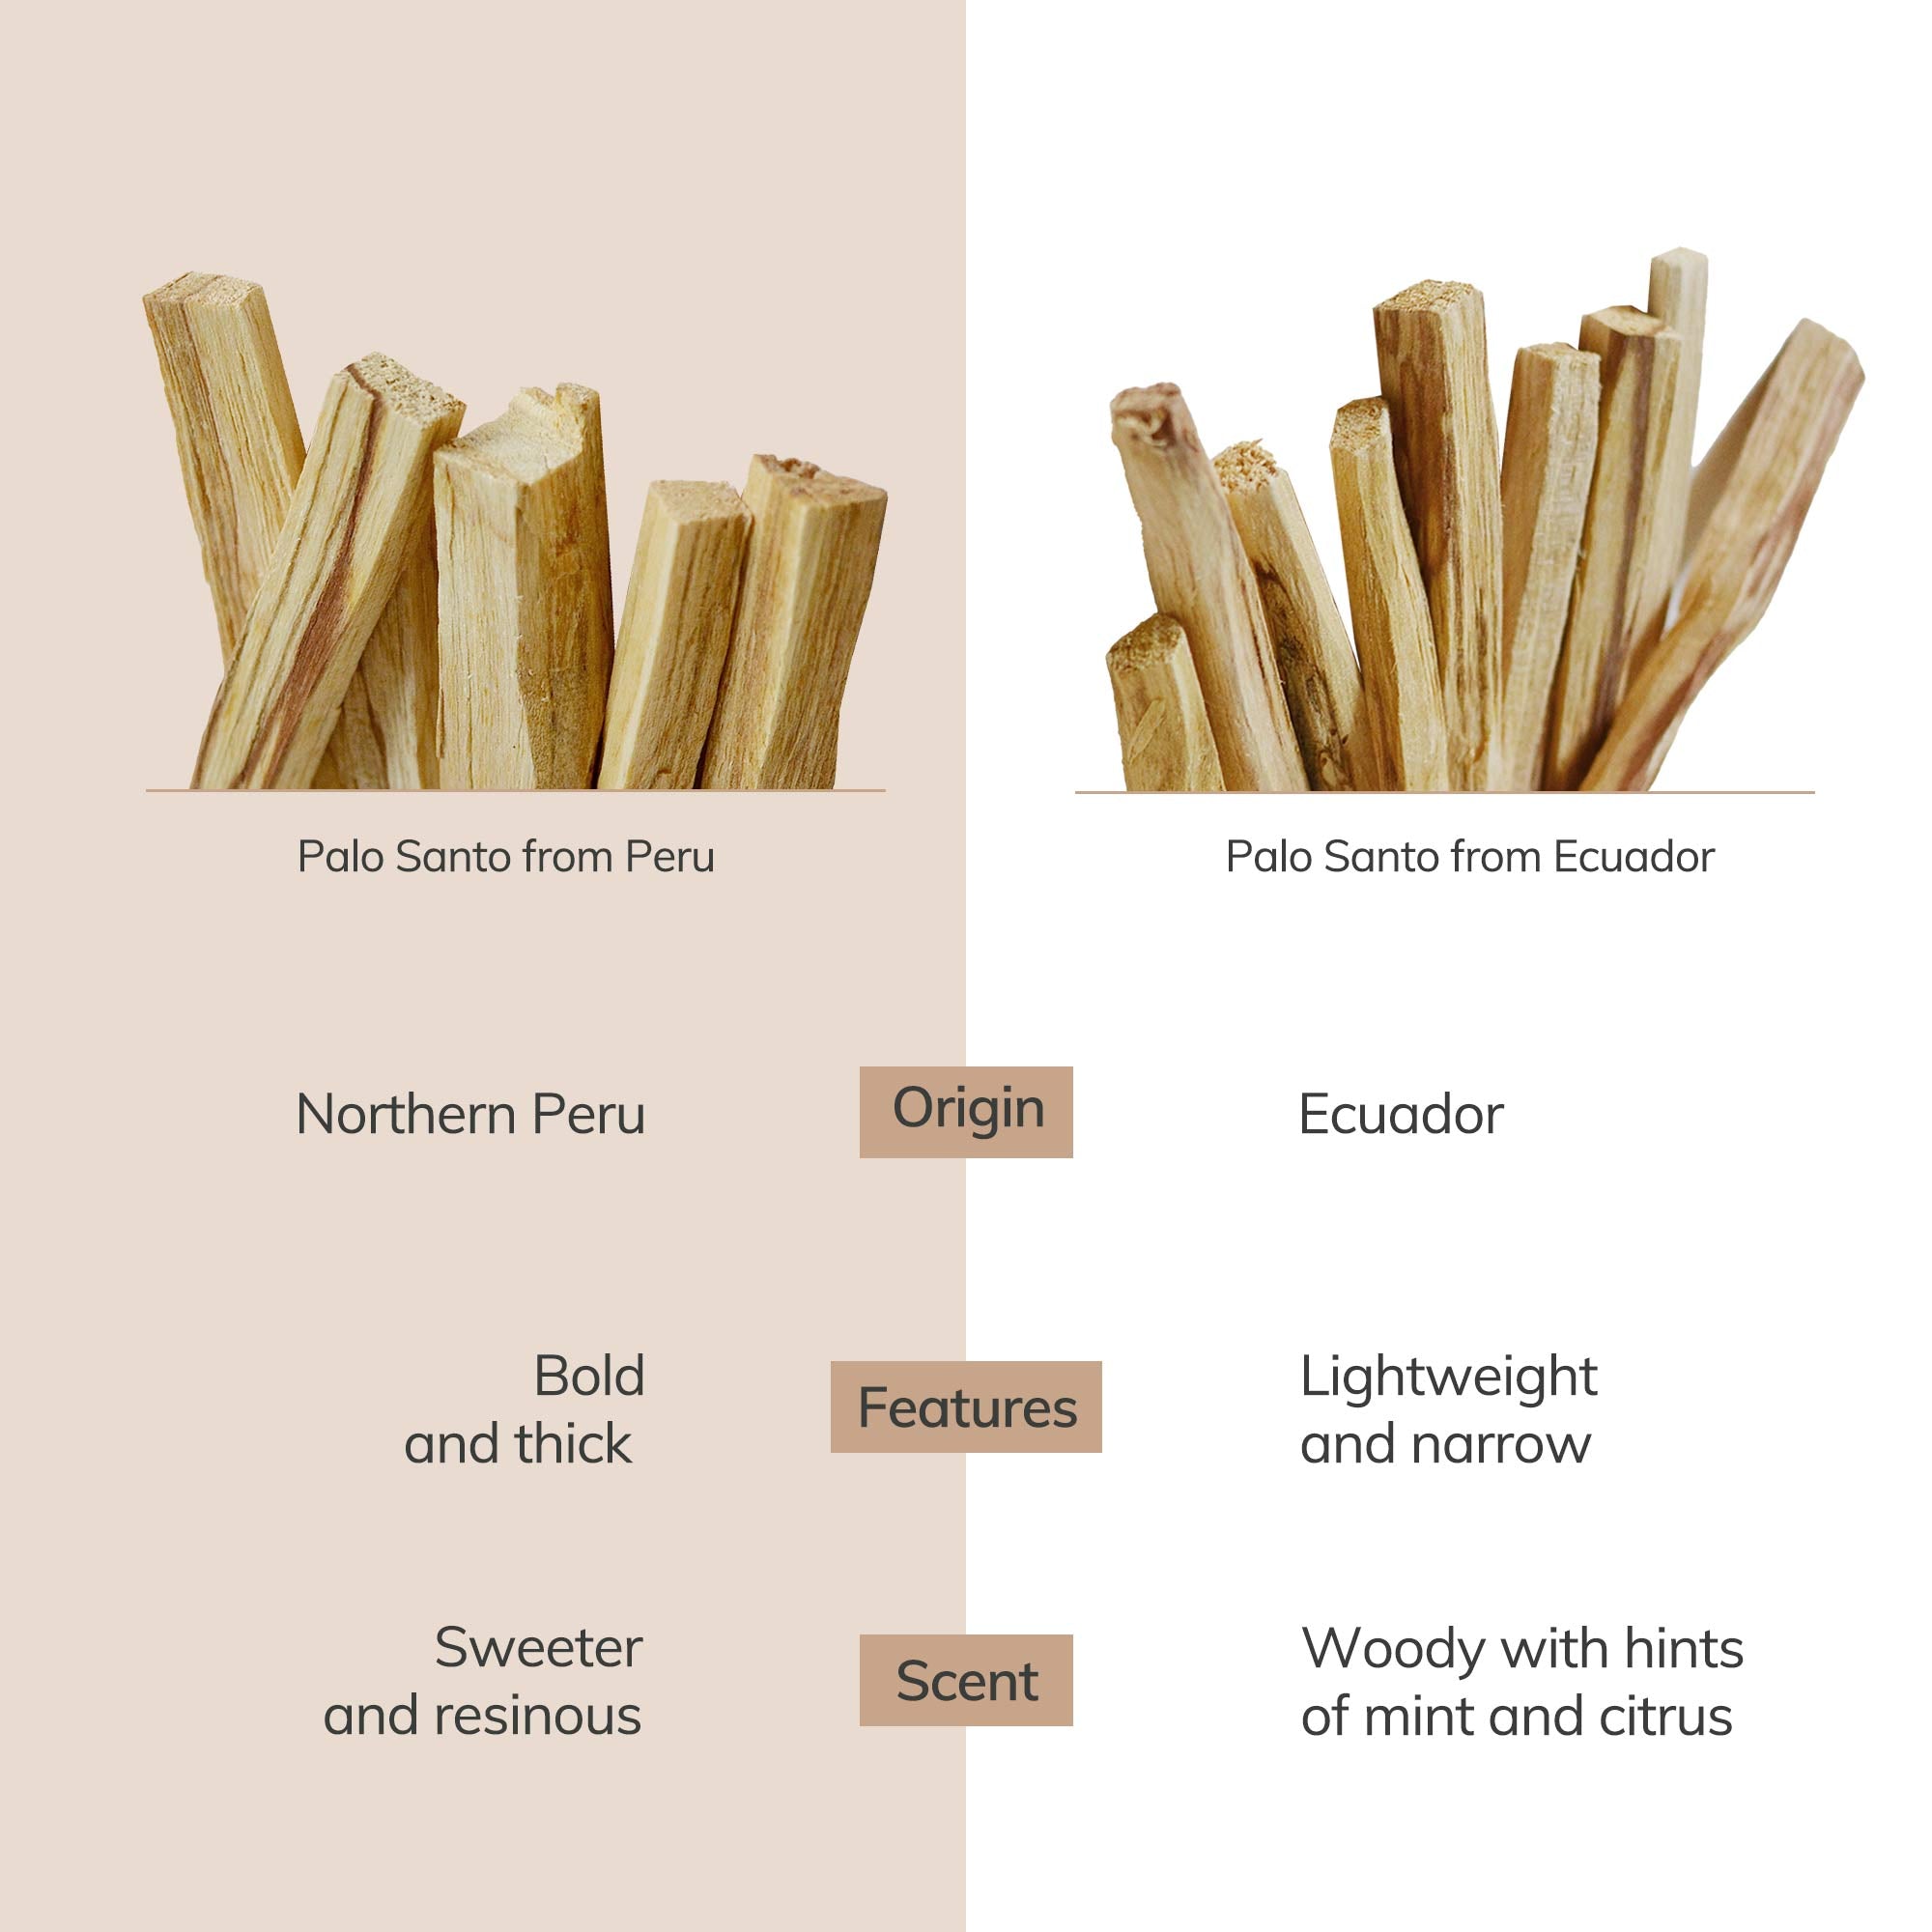 Comparision of palo santo wood smudge sticks between Peru and Ecuador.